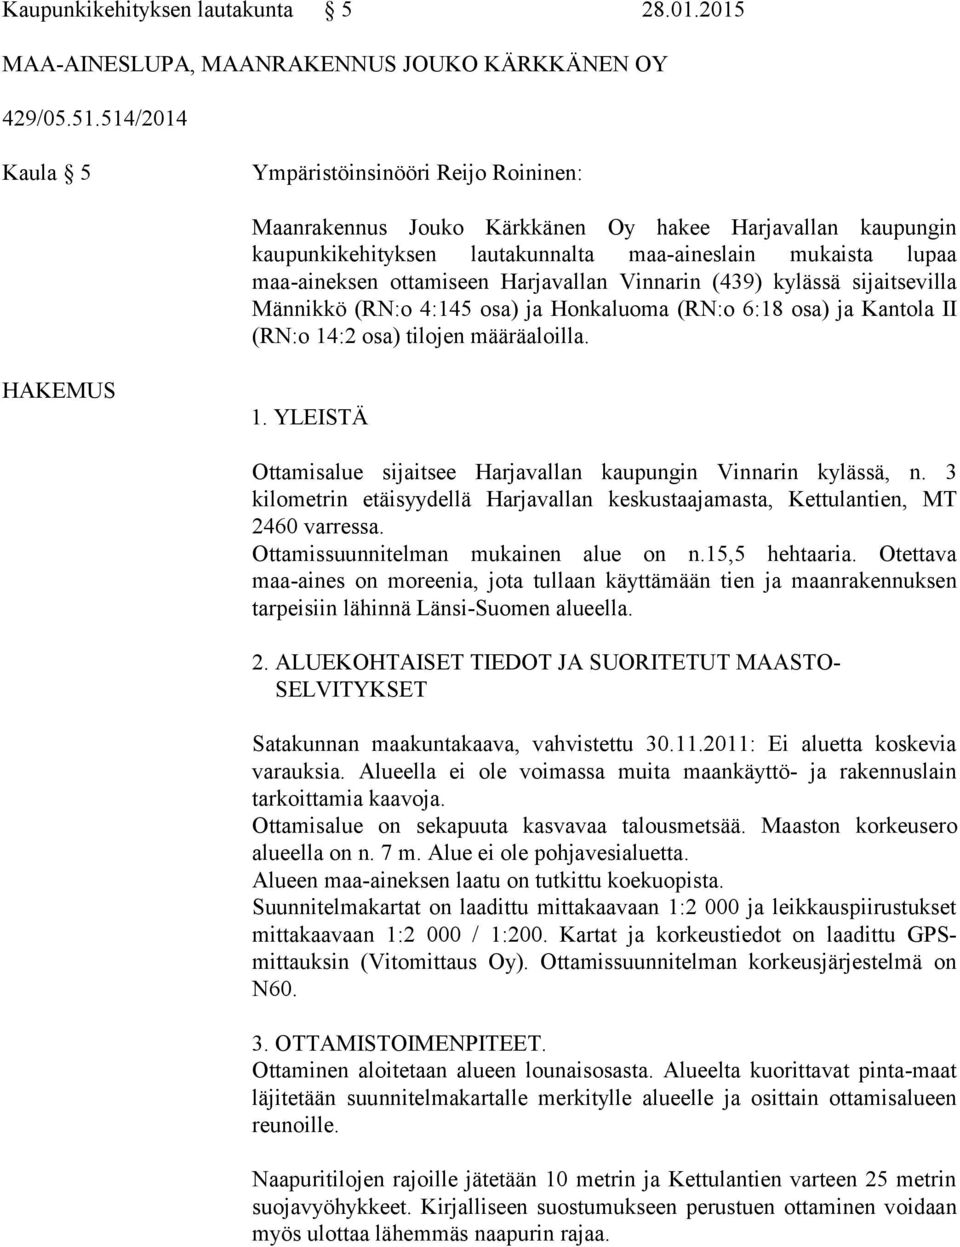 Harjavallan Vinnarin (439) kylässä sijaitsevilla Männikkö (RN:o 4:145 osa) ja Honkaluoma (RN:o 6:18 osa) ja Kantola II (RN:o 14:2 osa) tilojen määräaloilla. HAKEMUS 1.